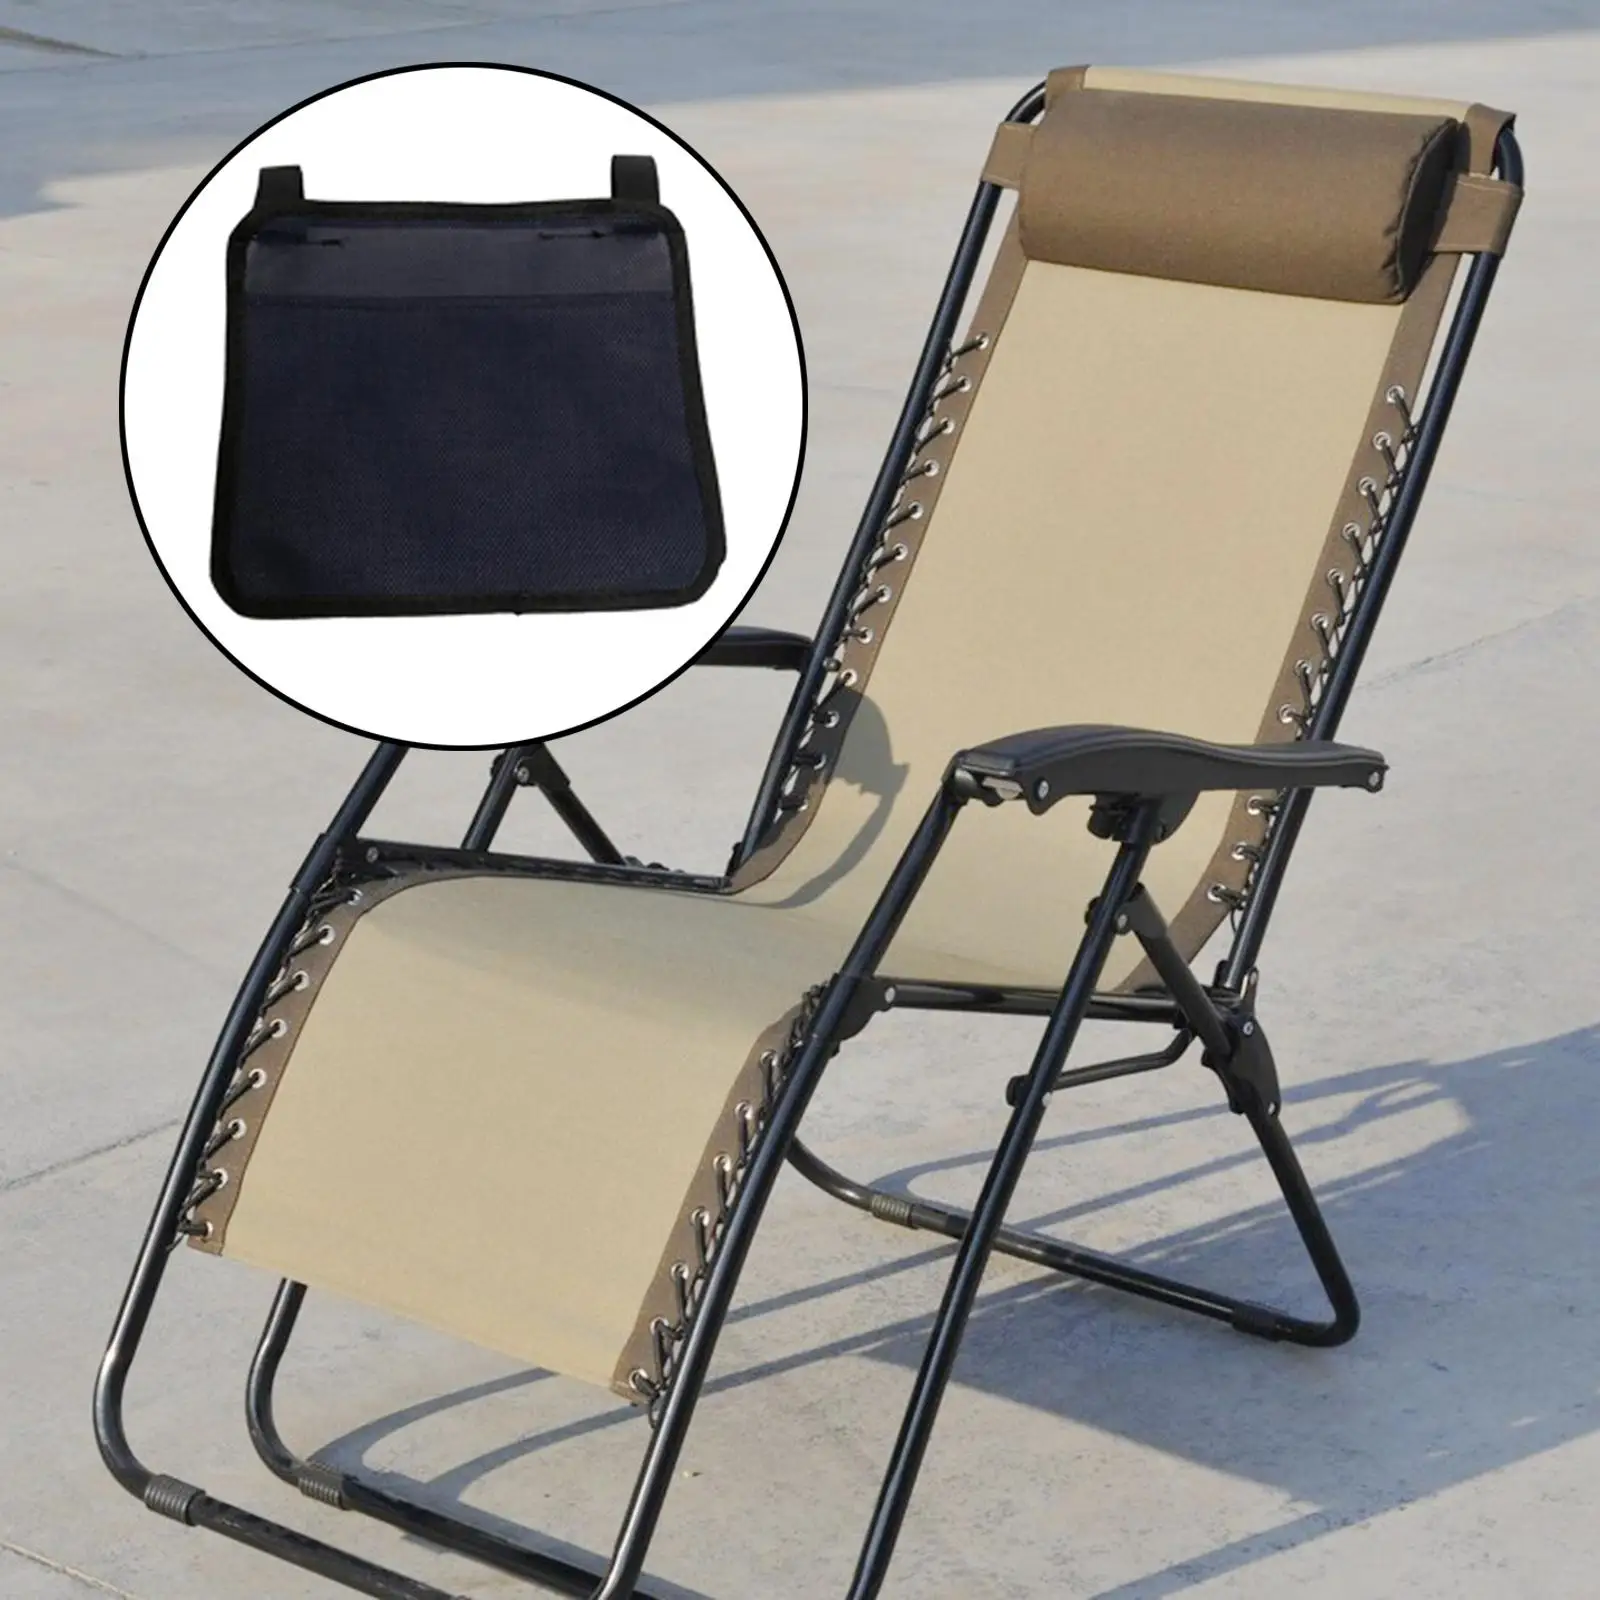 Universal   Side Bag Pockets for  Recliner Sun Lounger Bedside office  bookshelf Holder Hanging Bag